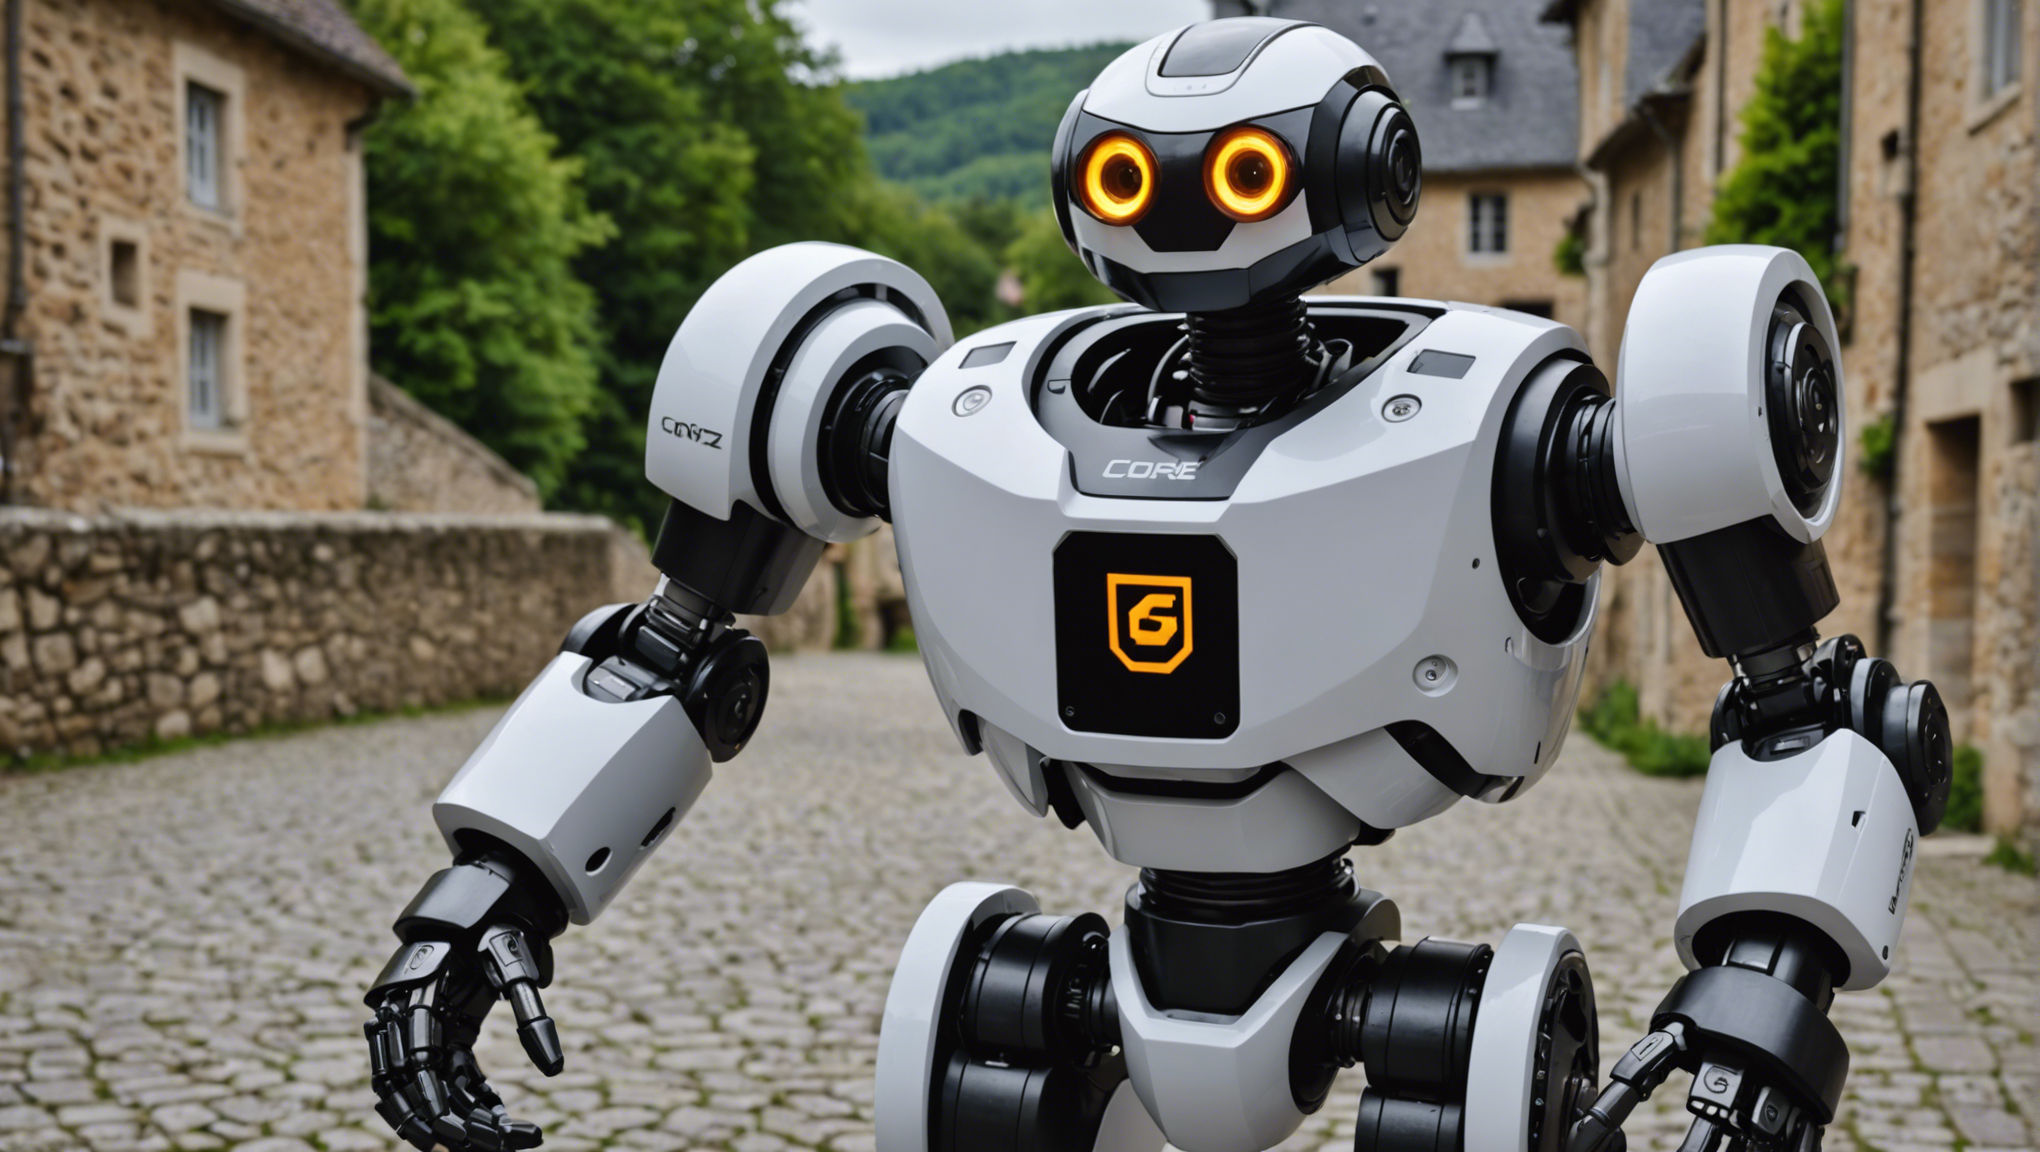 besoin d'aide en corrèze ? louez un robot pour faciliter vos tâches ! découvrez notre service de location de robots pour vous accompagner dans vos tâches quotidiennes en corrèze.